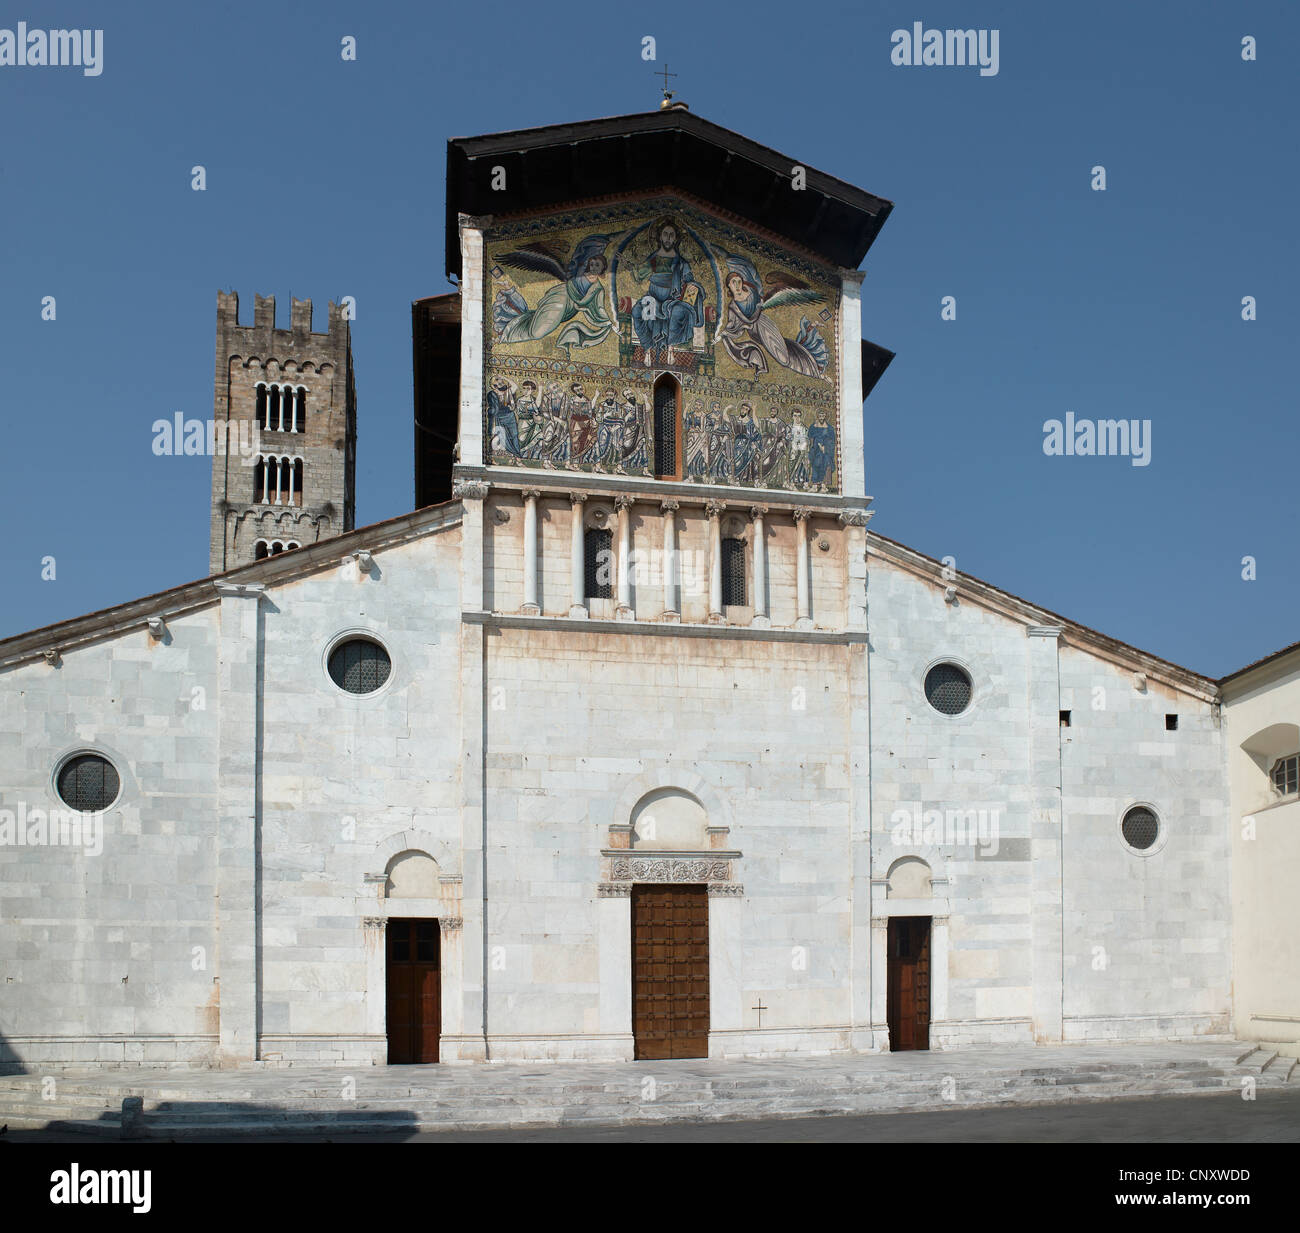 Église de San Frediano, Lucca, Italie. Façade donnant sur le sud-est, avec la mosaïque de style byzantin du 13e siècle de l'Ascension, Banque D'Images